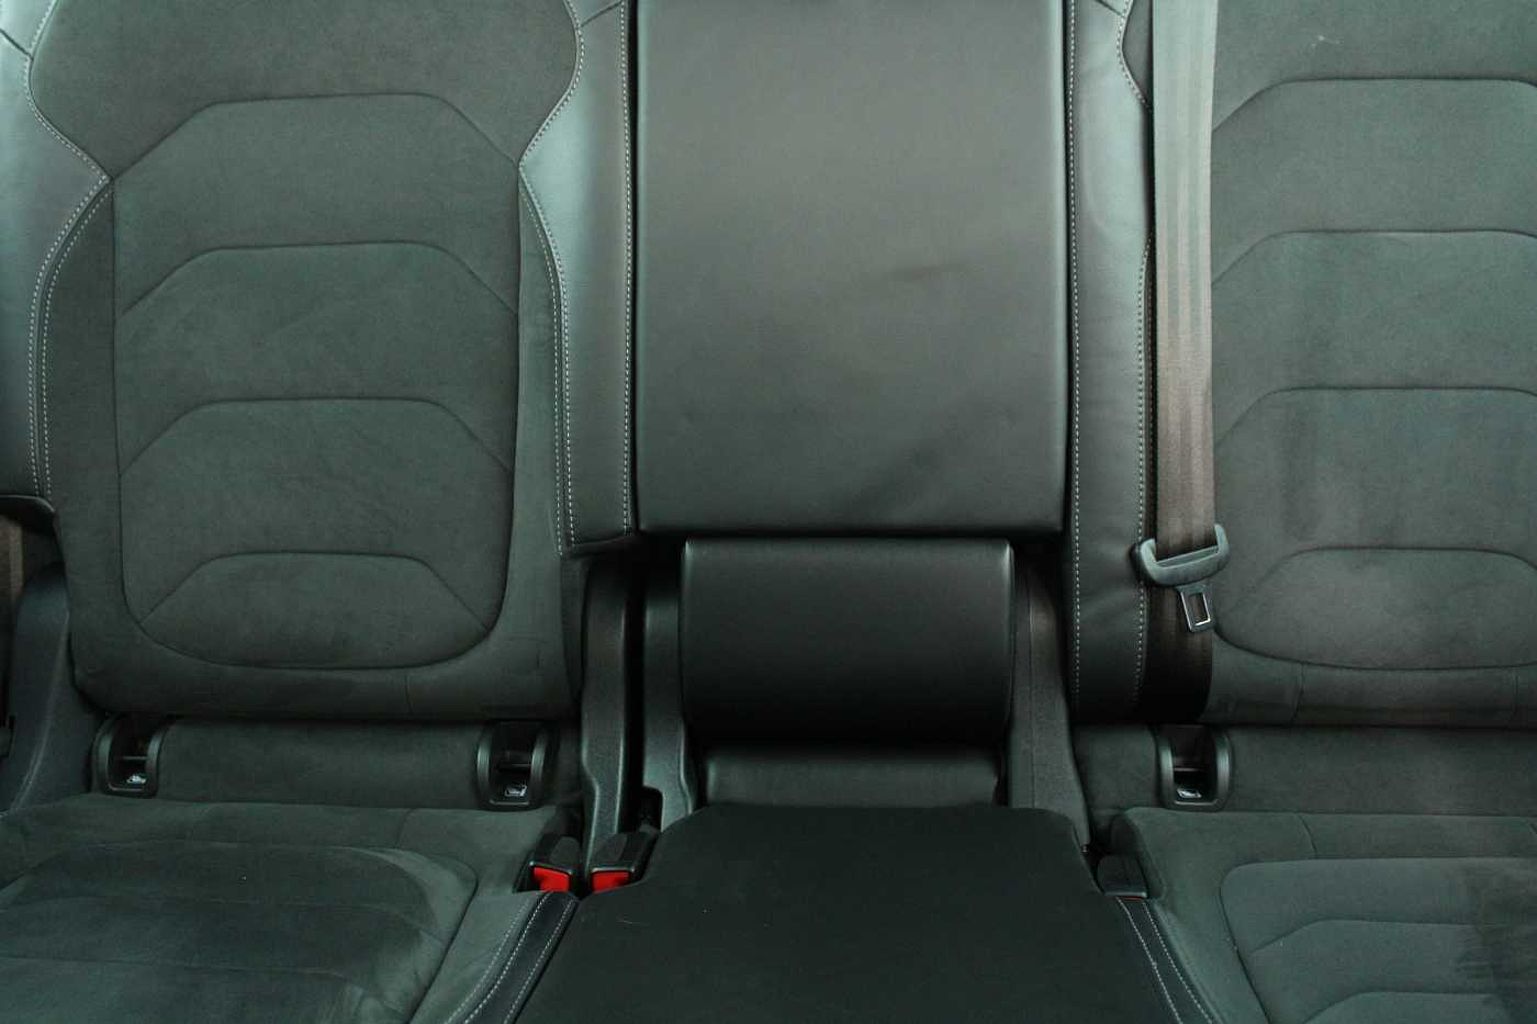 SKODA Kodiaq 1.5 TSI (150ps) SE L (7 seats) DSG SUV